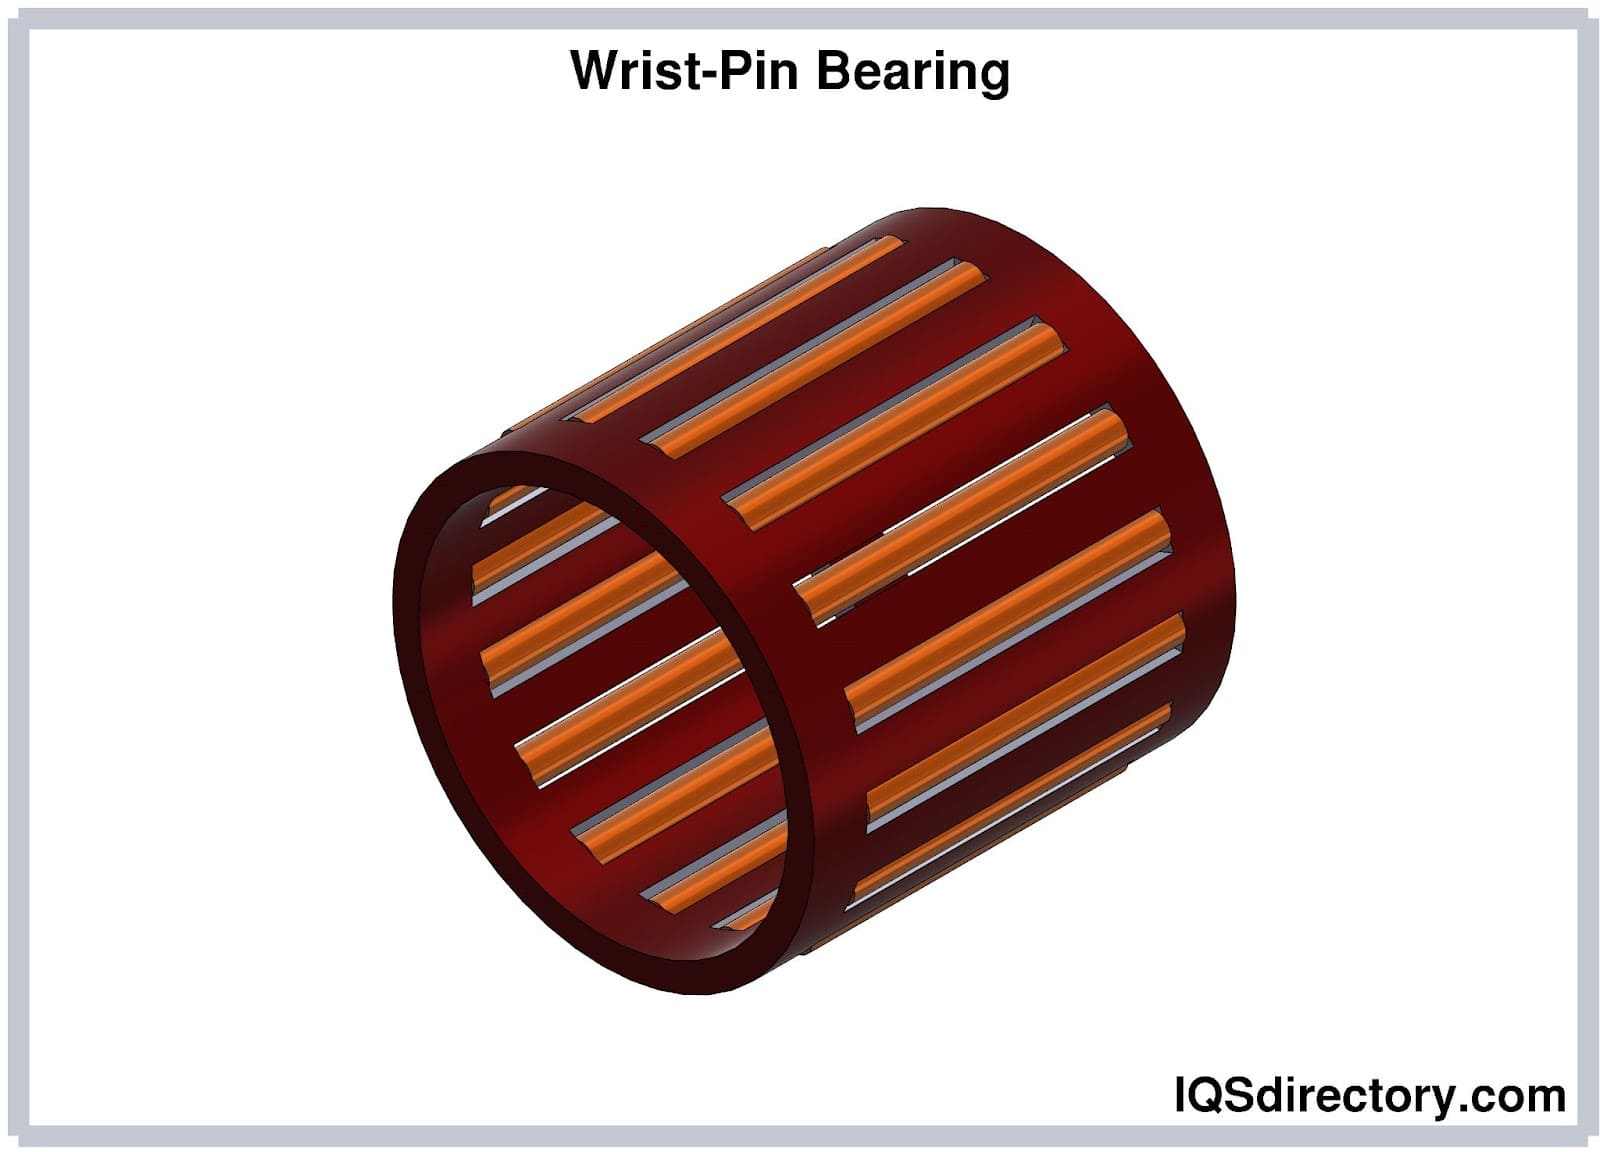 Wrist-Pin Bearing